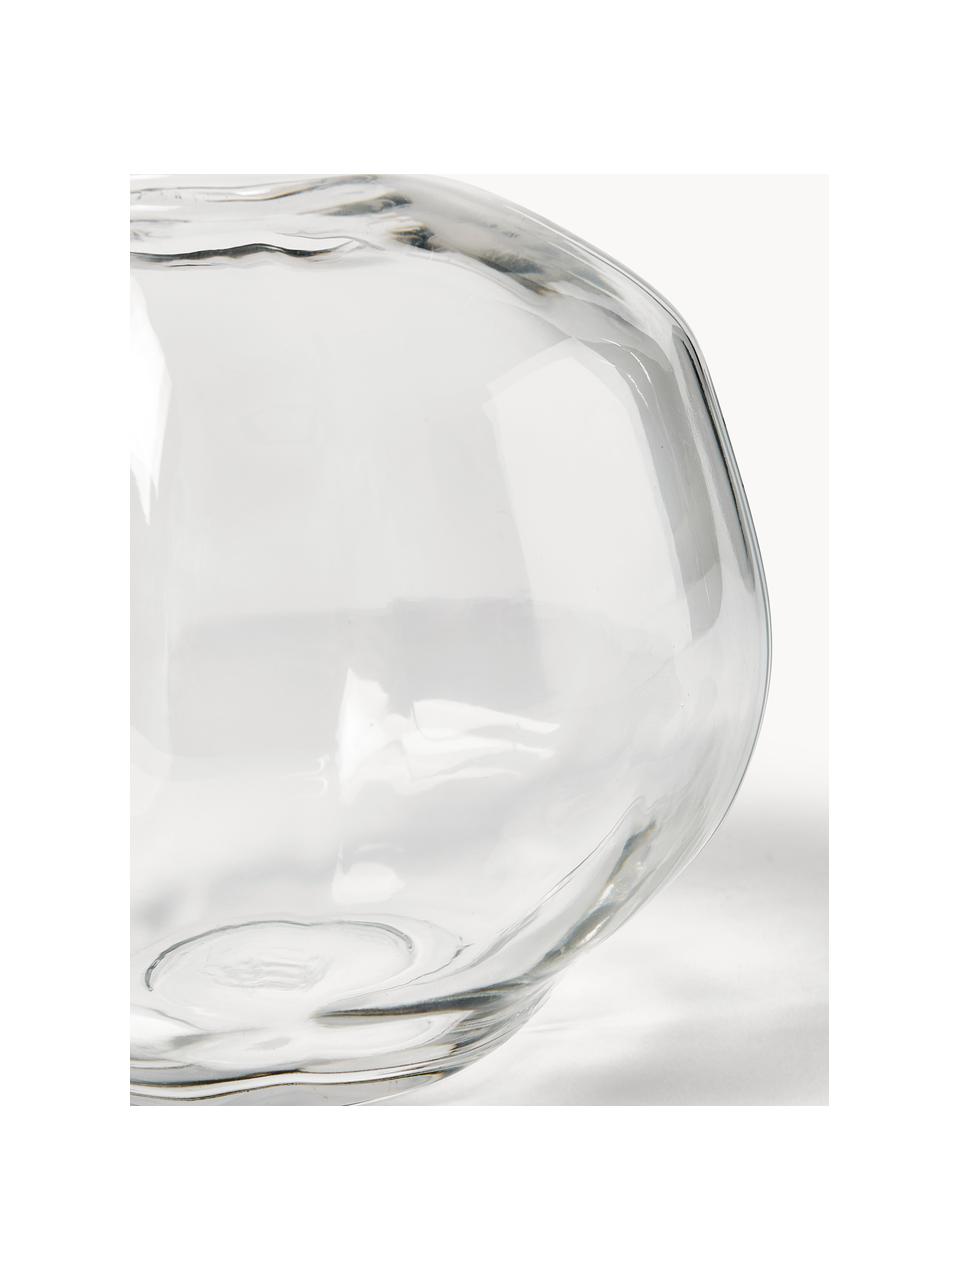 Vaso in vetro Pebble, Ø 28 cm, Vetro, Trasparente, Ø 28 x Alt. 28 cm